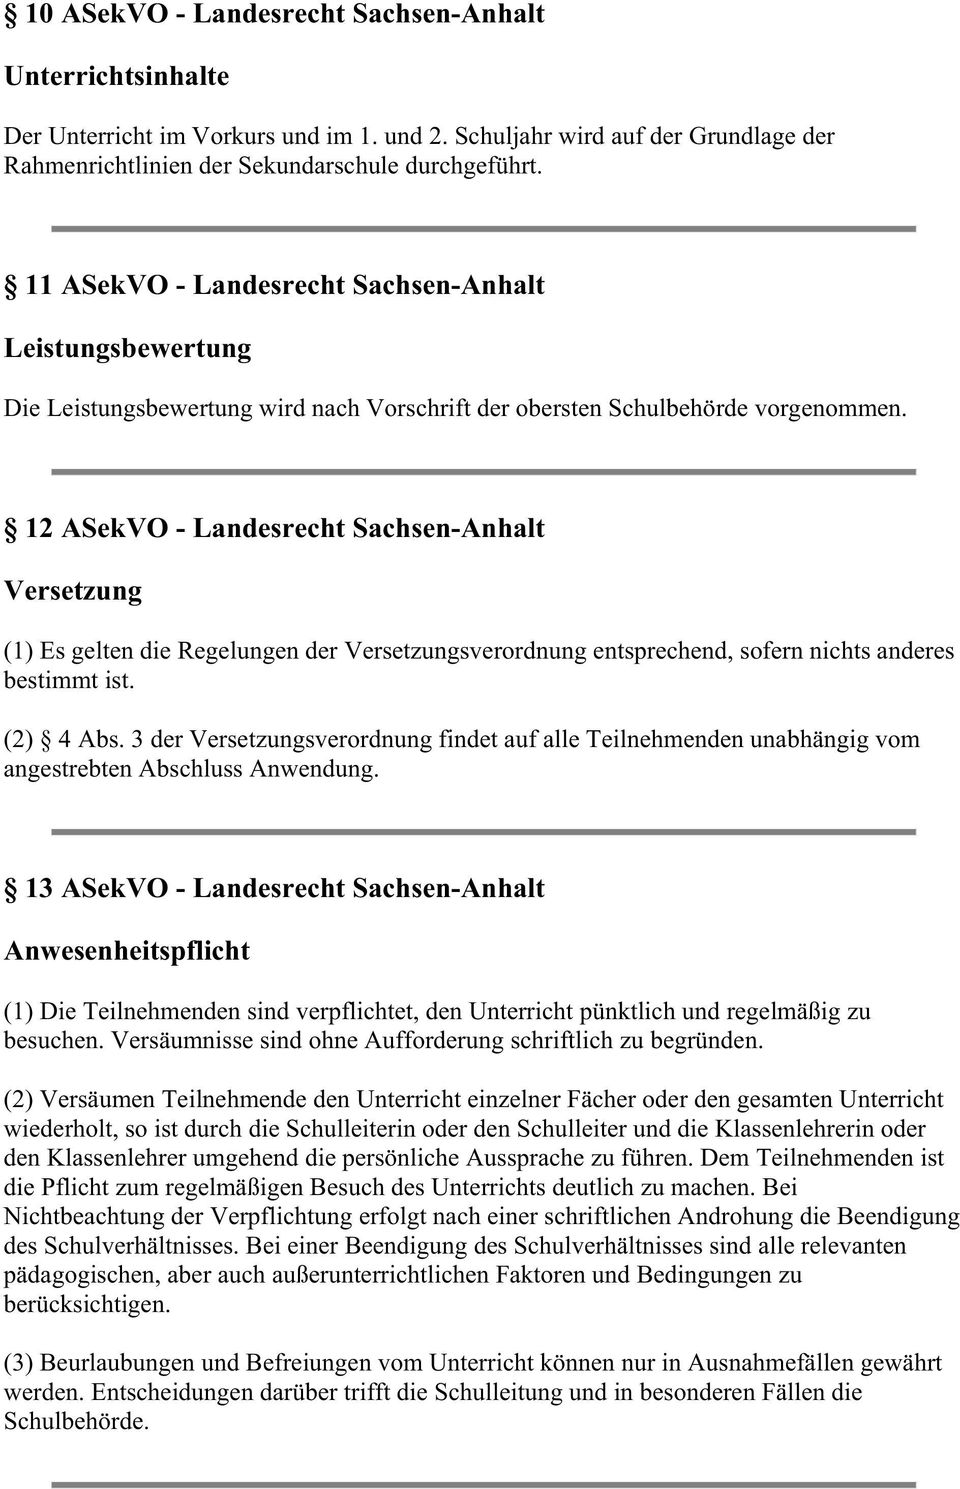 12 ASekVO - Landesrecht Sachsen-Anhalt Versetzung (1) Es gelten die Regelungen der Versetzungsverordnung entsprechend, sofern nichts anderes bestimmt ist. (2) 4 Abs.